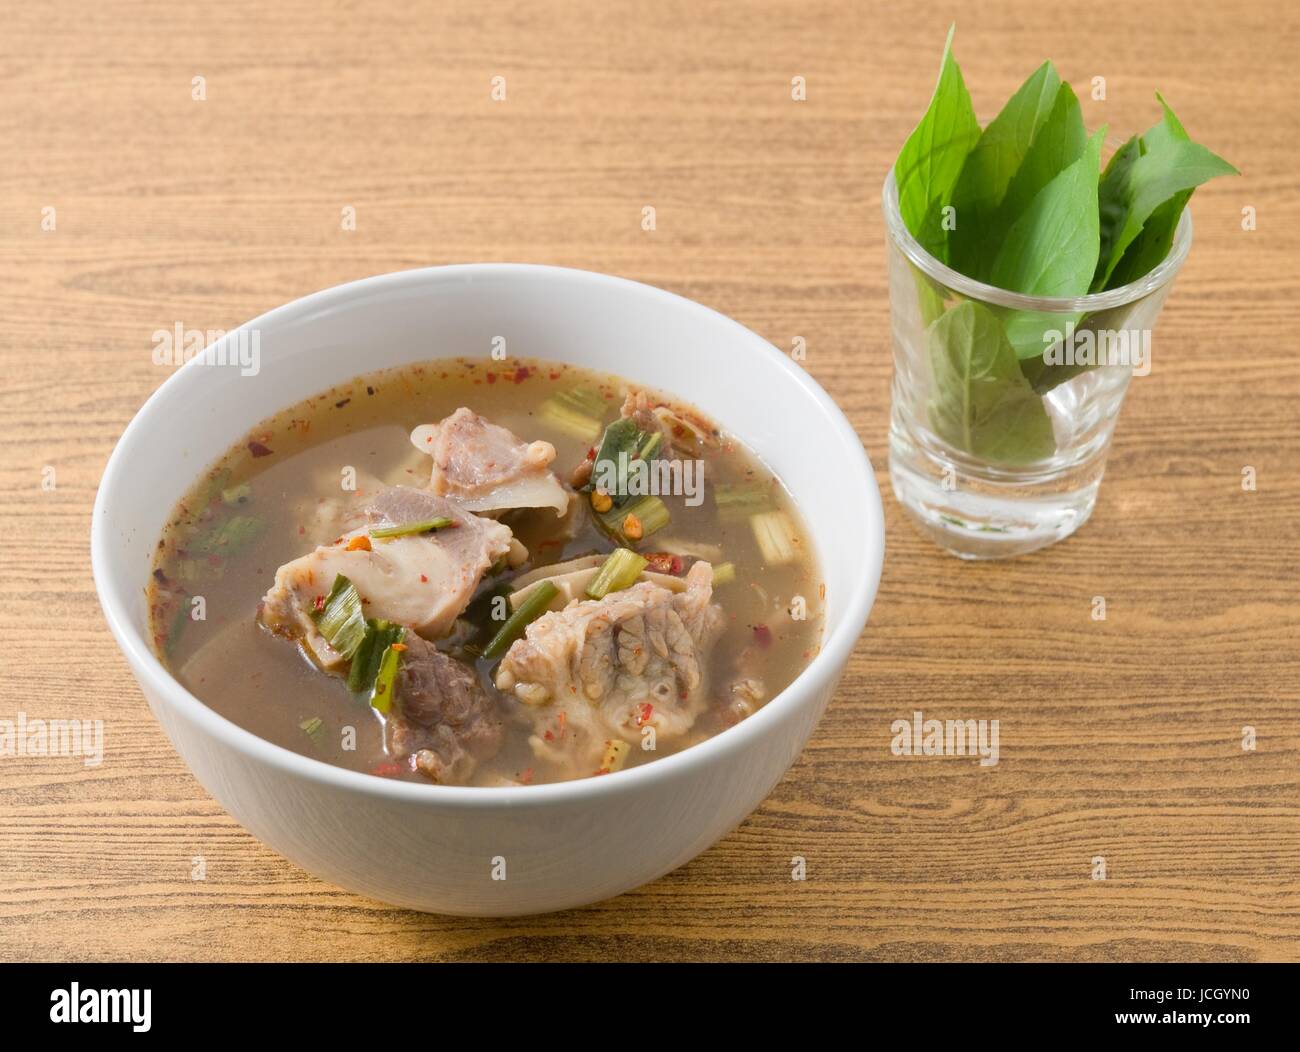 Cucina tailandese e cibo, una ciotola di Chiara thai piccante e aspro zuppa con le interiora dei bovini. Foto Stock